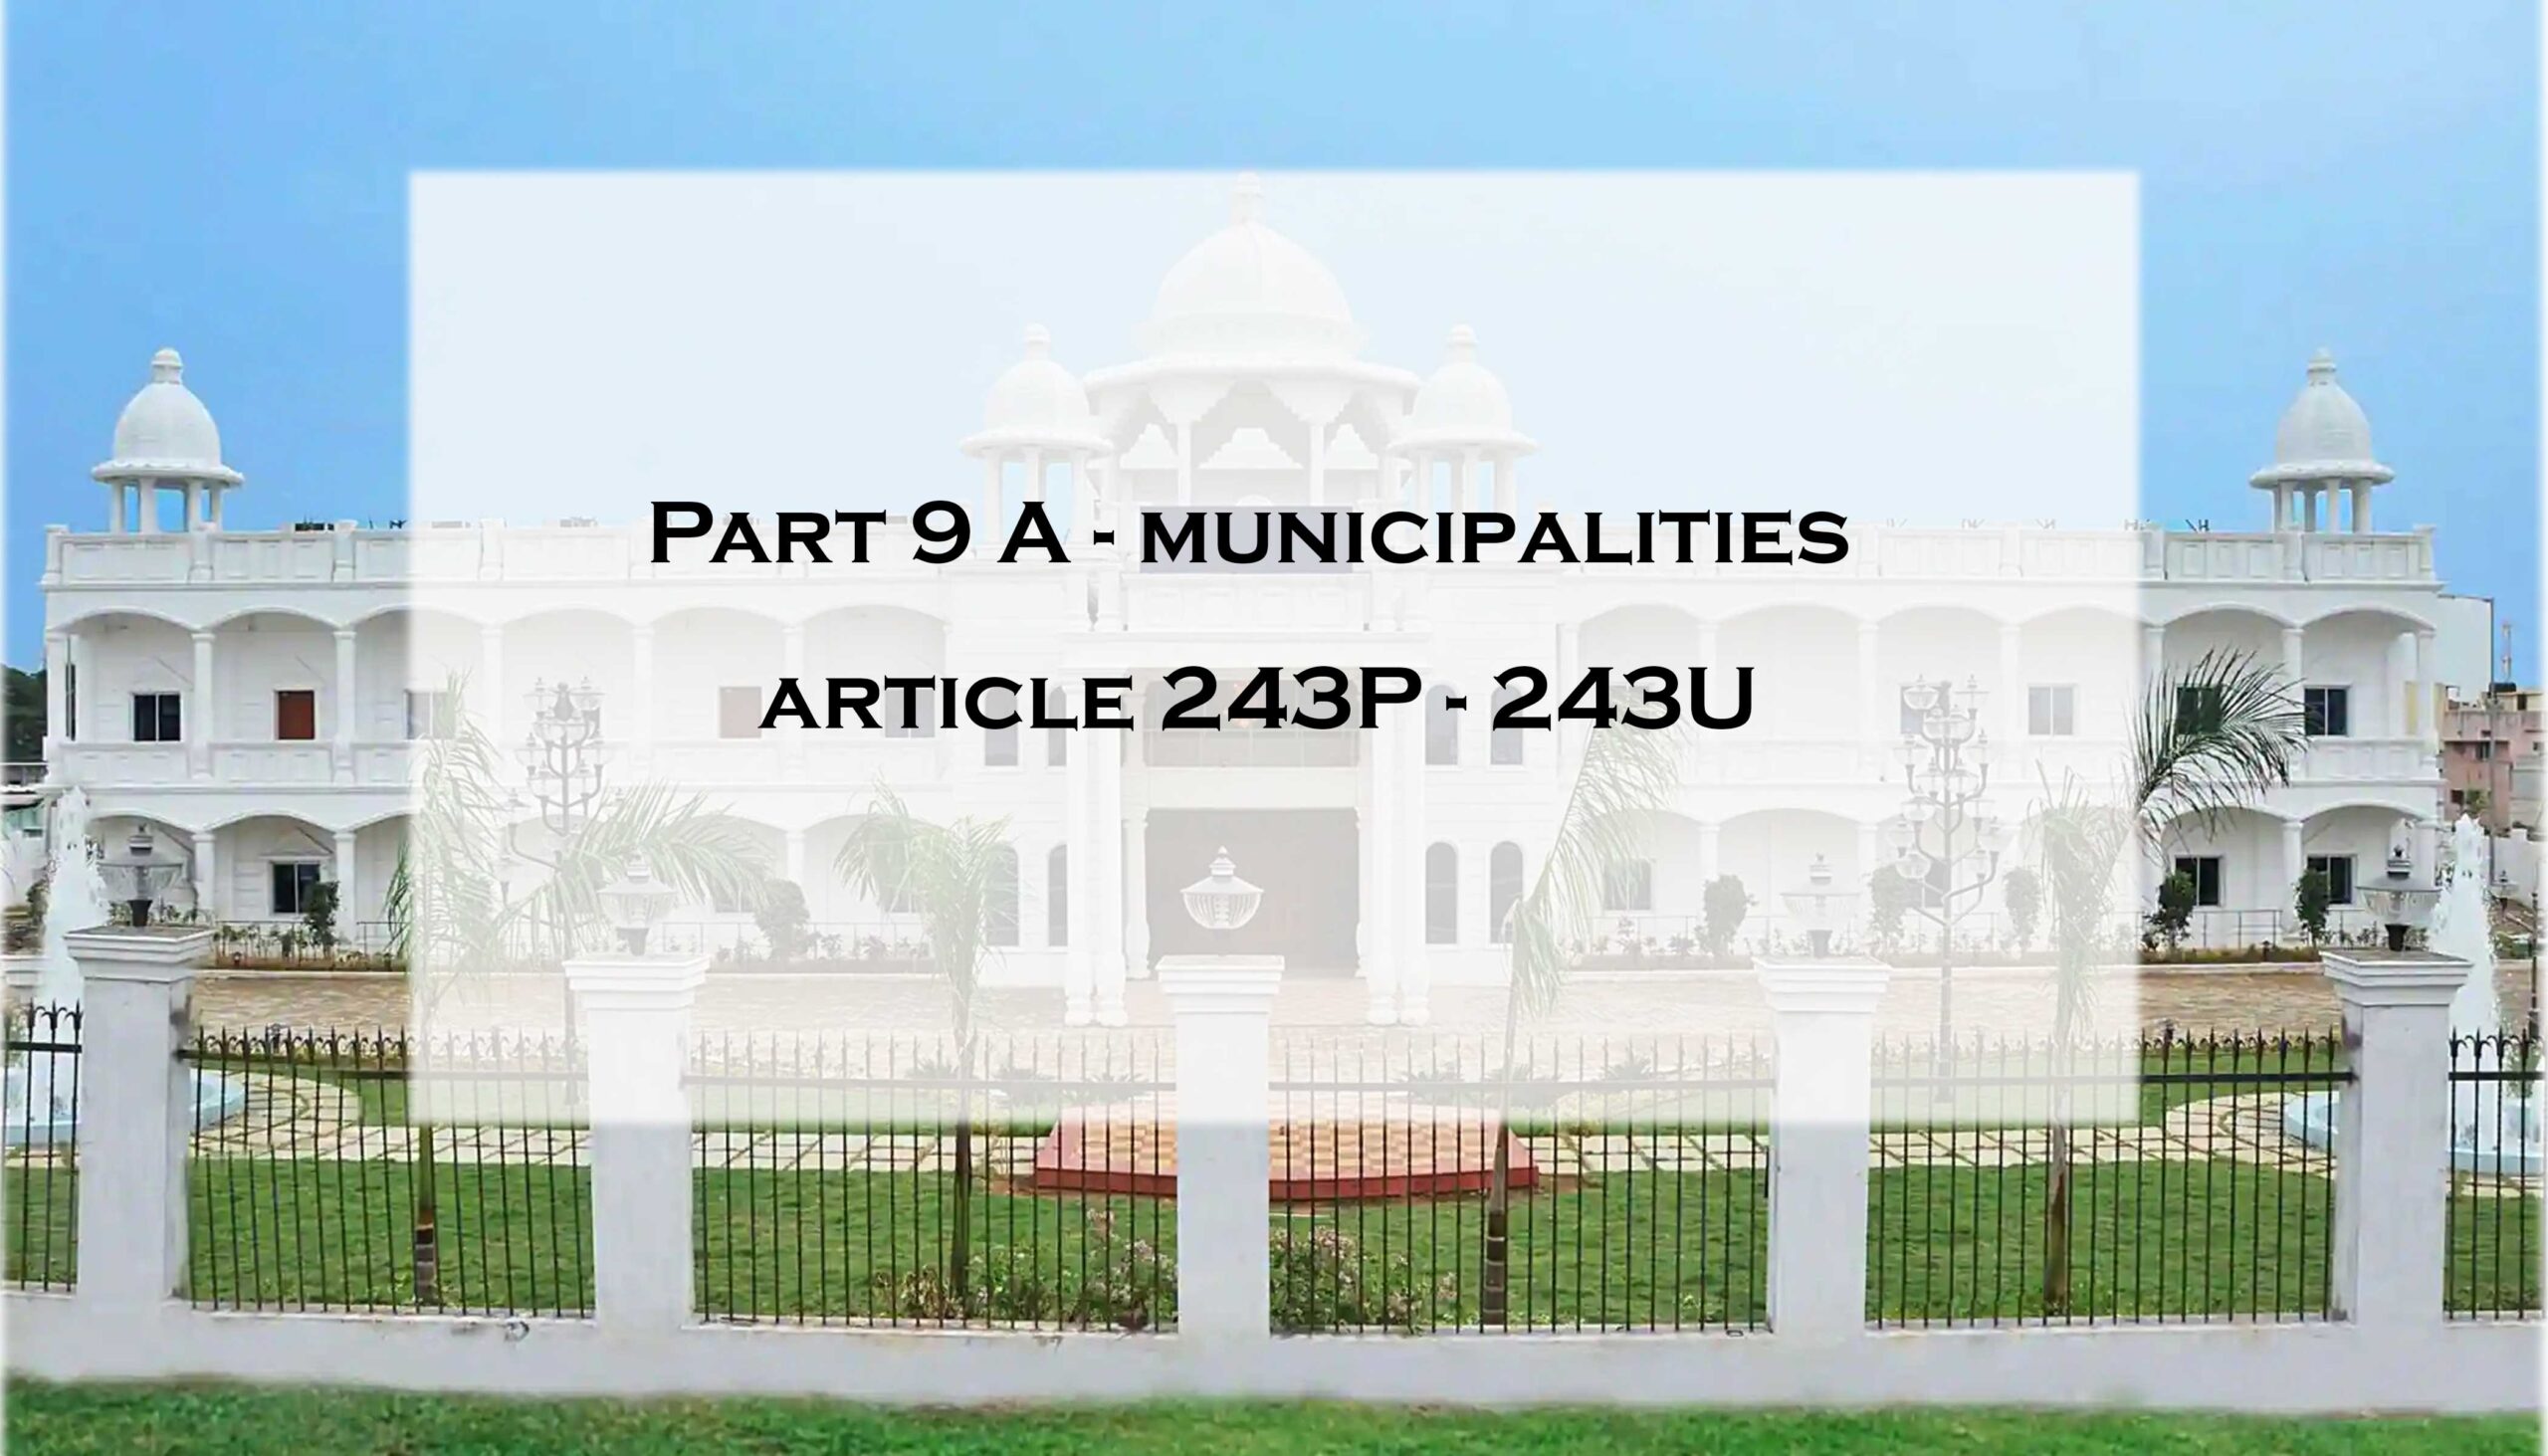 Article 243P – 243U